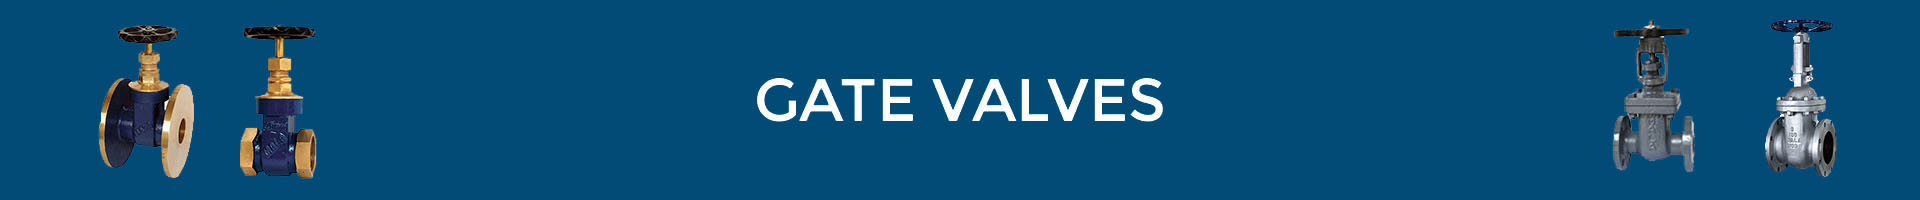 gate-valves-banner